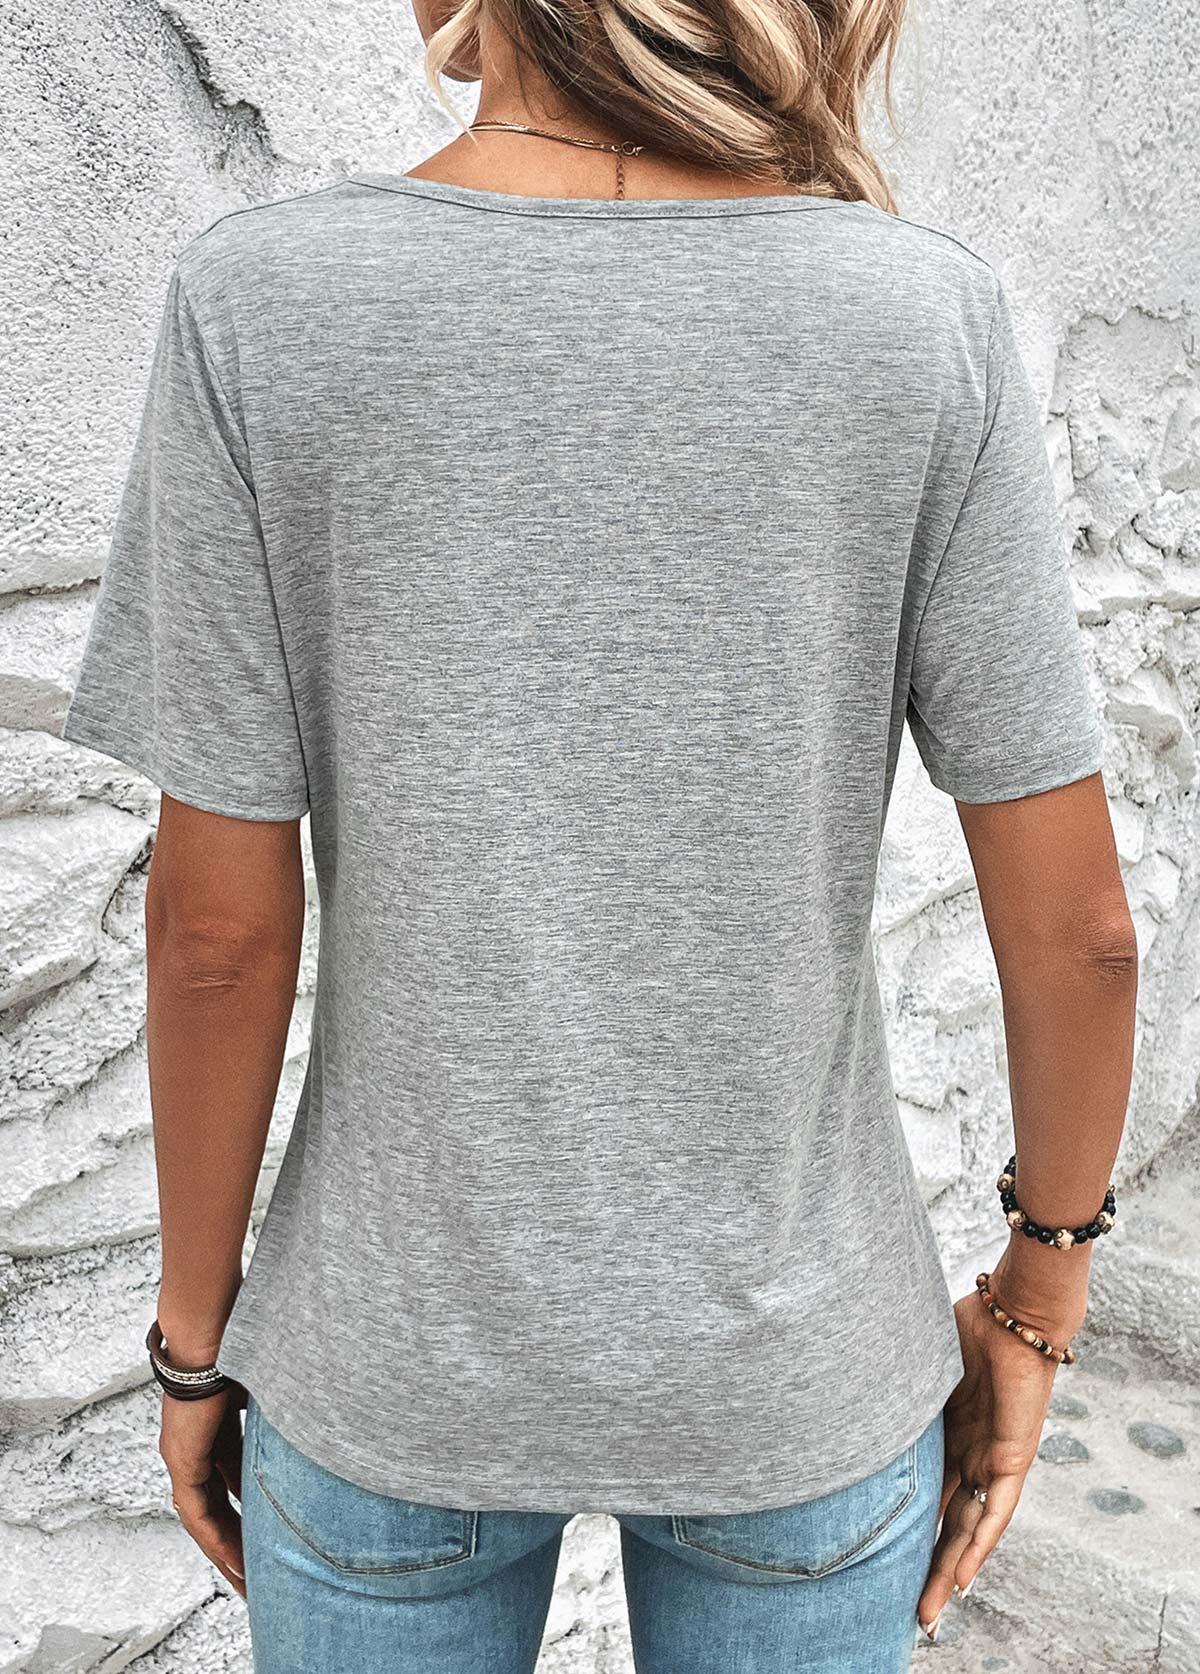 Light Grey Marl Short Sleeve T Shirt | modlily.com - USD 24.98